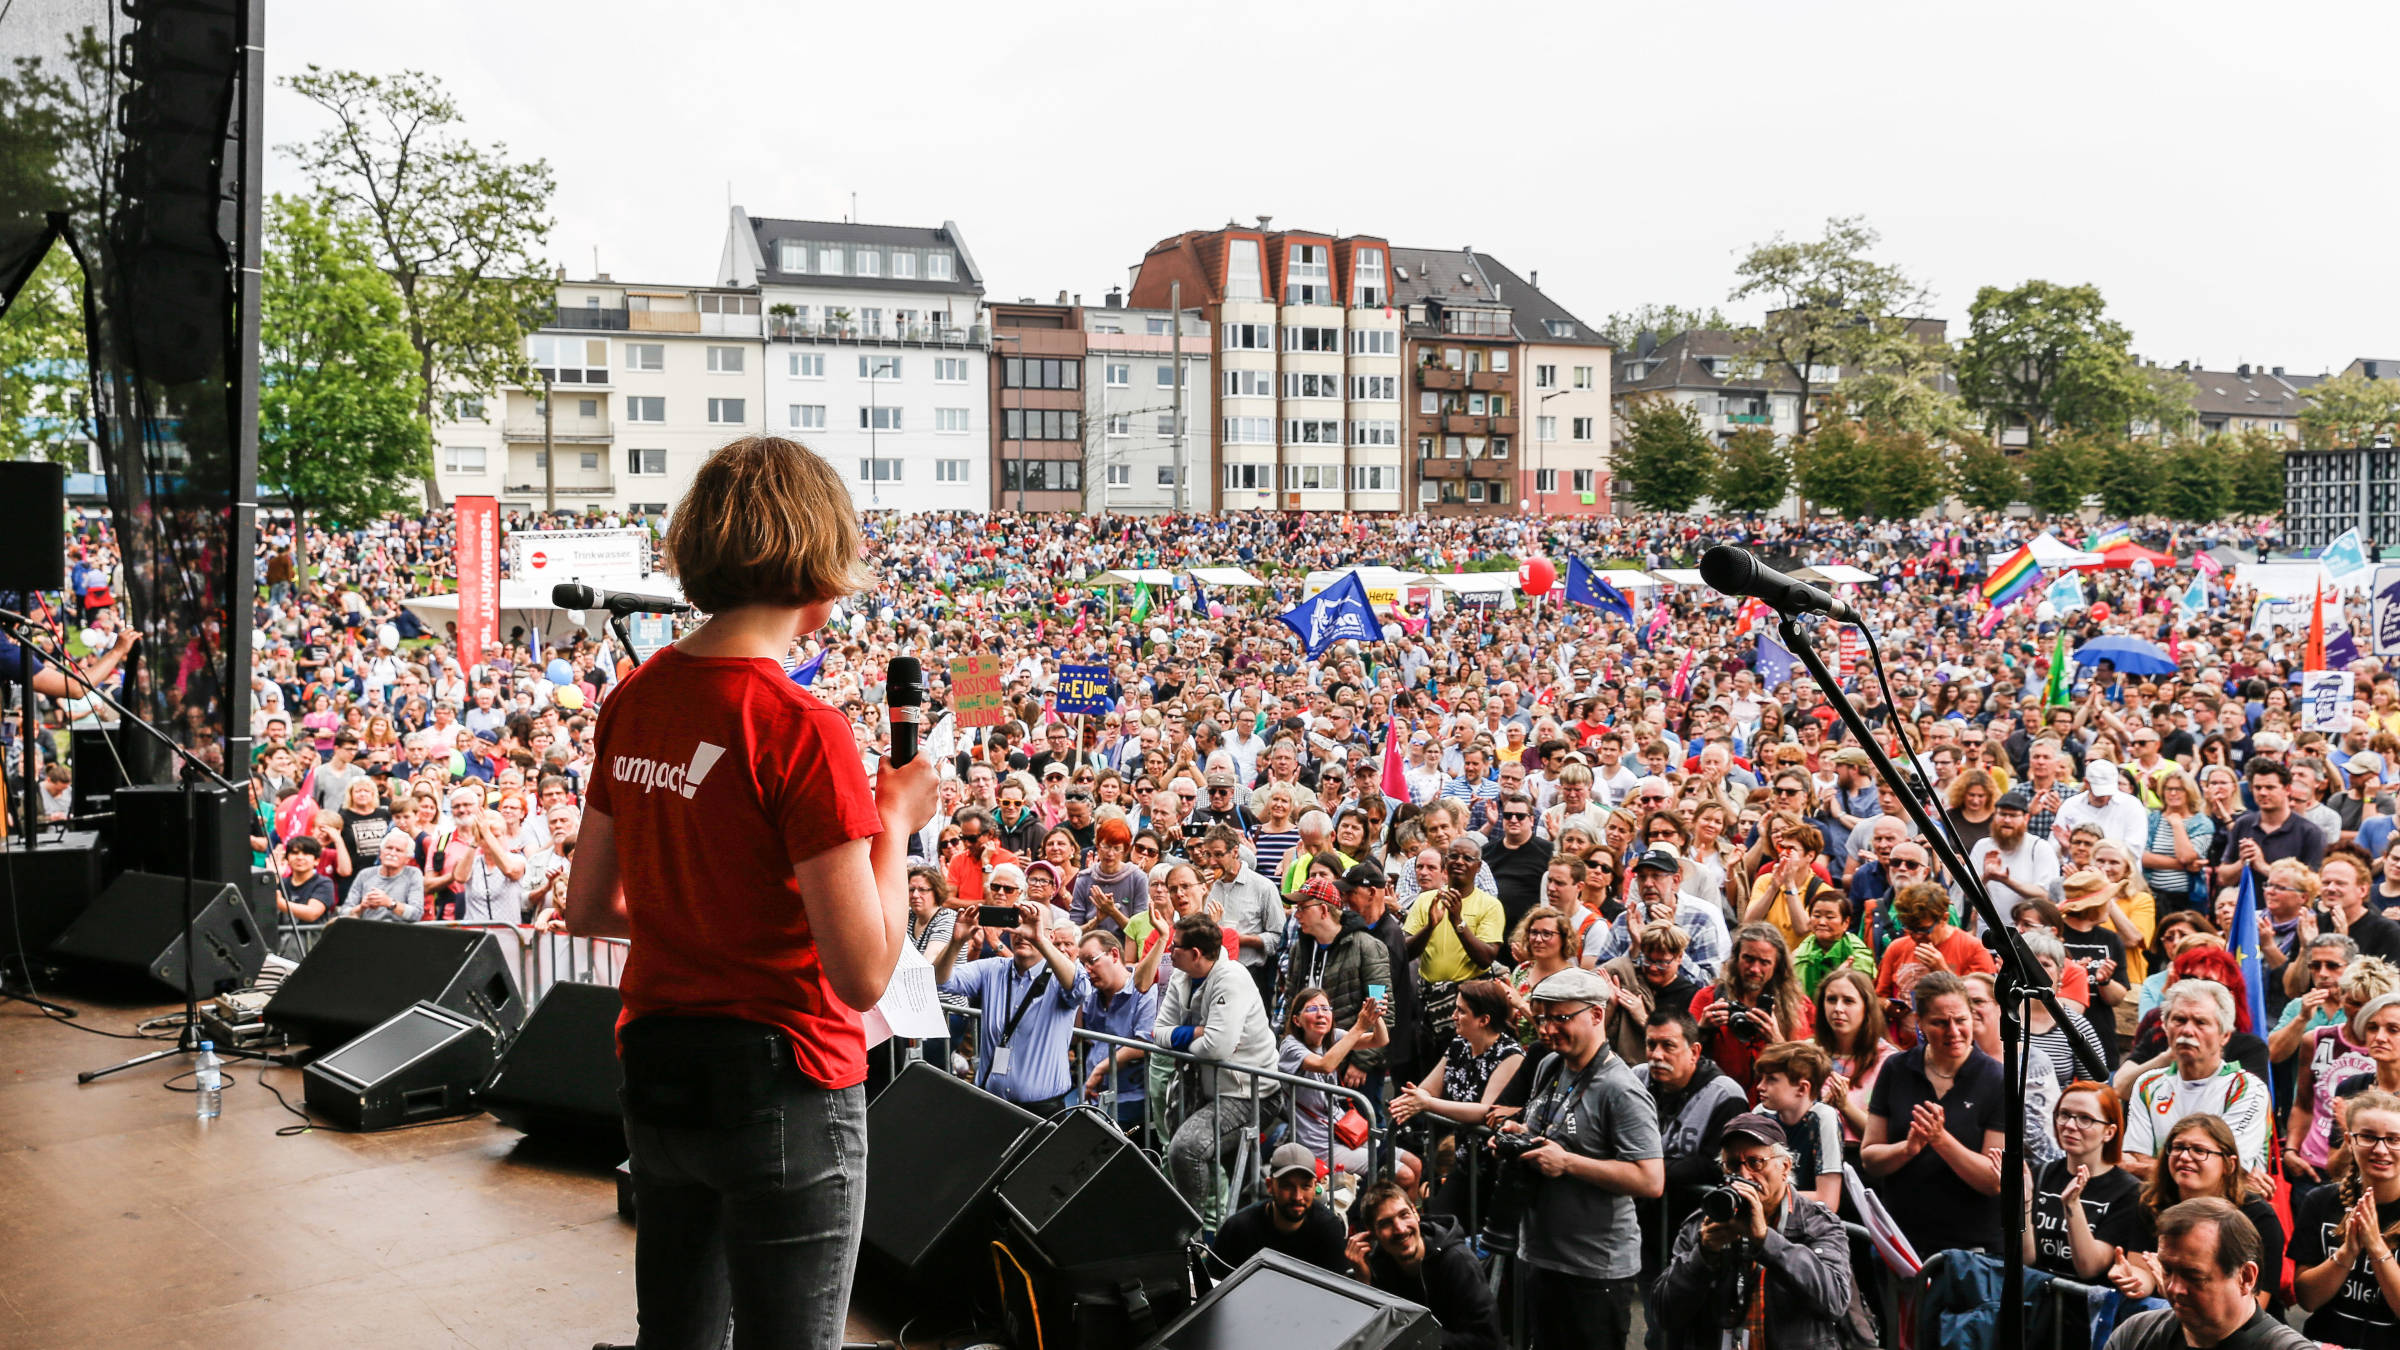 Für ein tolerantes, friedliches und zukunftsfähiges Europa gingen 2019 viele Menschen bei Europa-Demos auf die Straße, wie hier in Köln. Eine Person mit Campact-Shirt steht auf einer Demobühne und hält eine Rede.